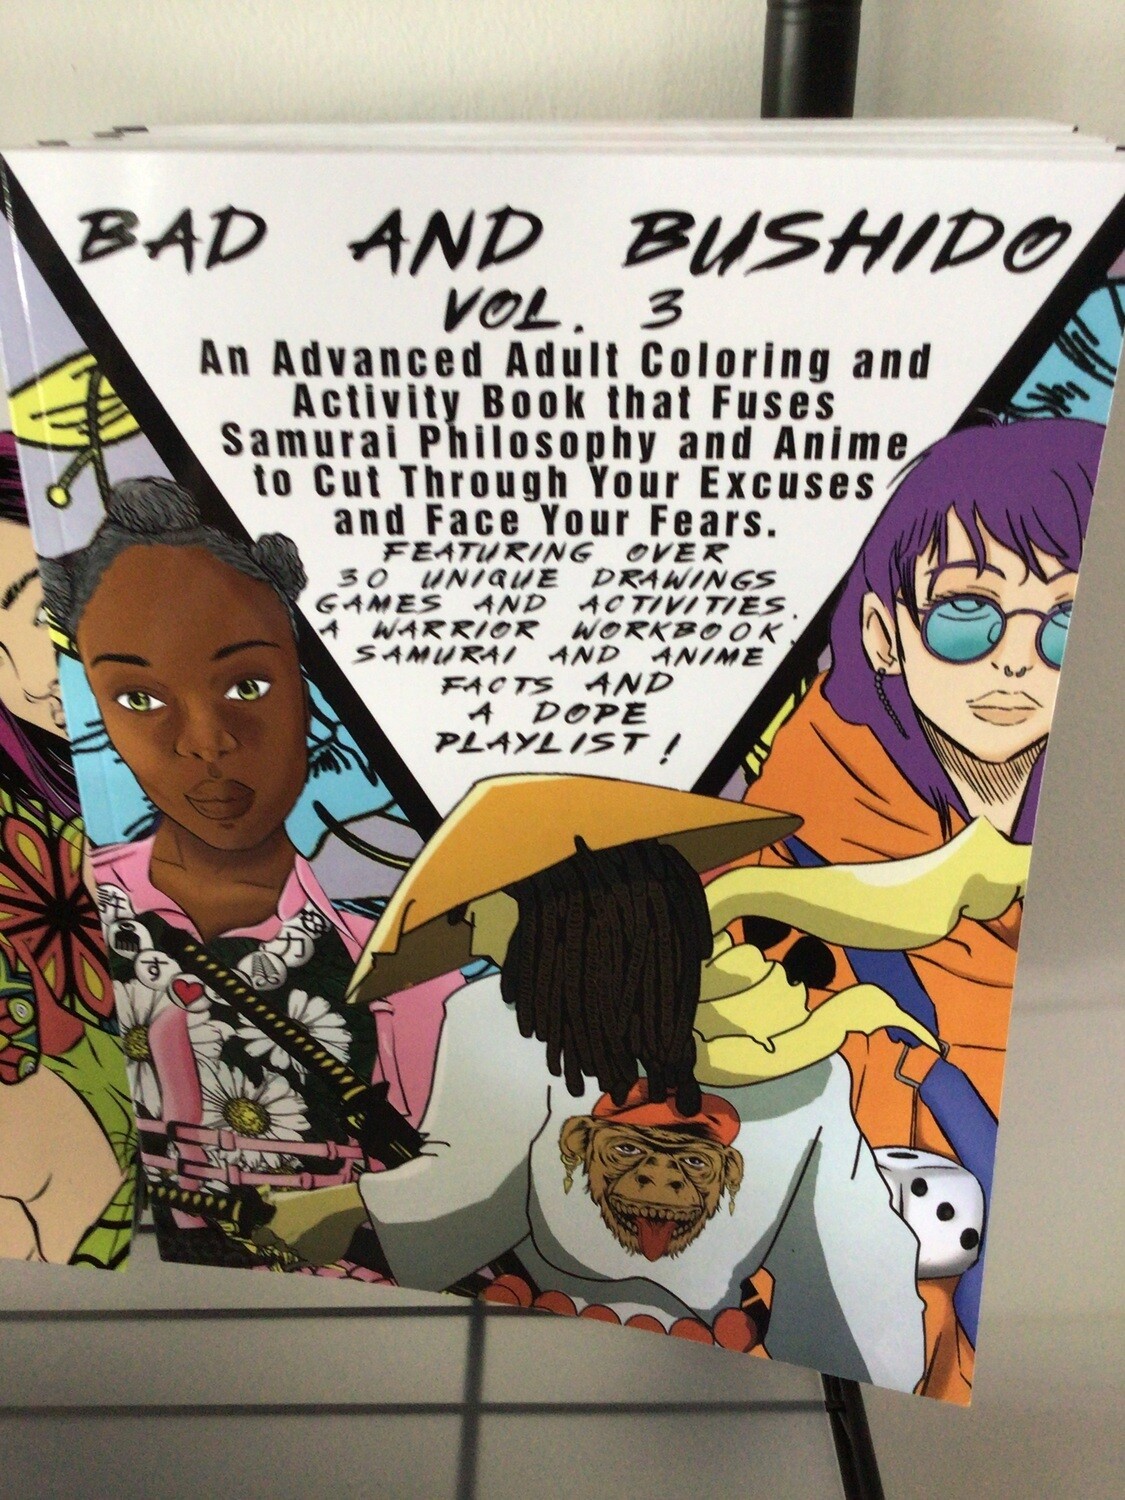 Bad And Bushido Vol 3 Coloring Book